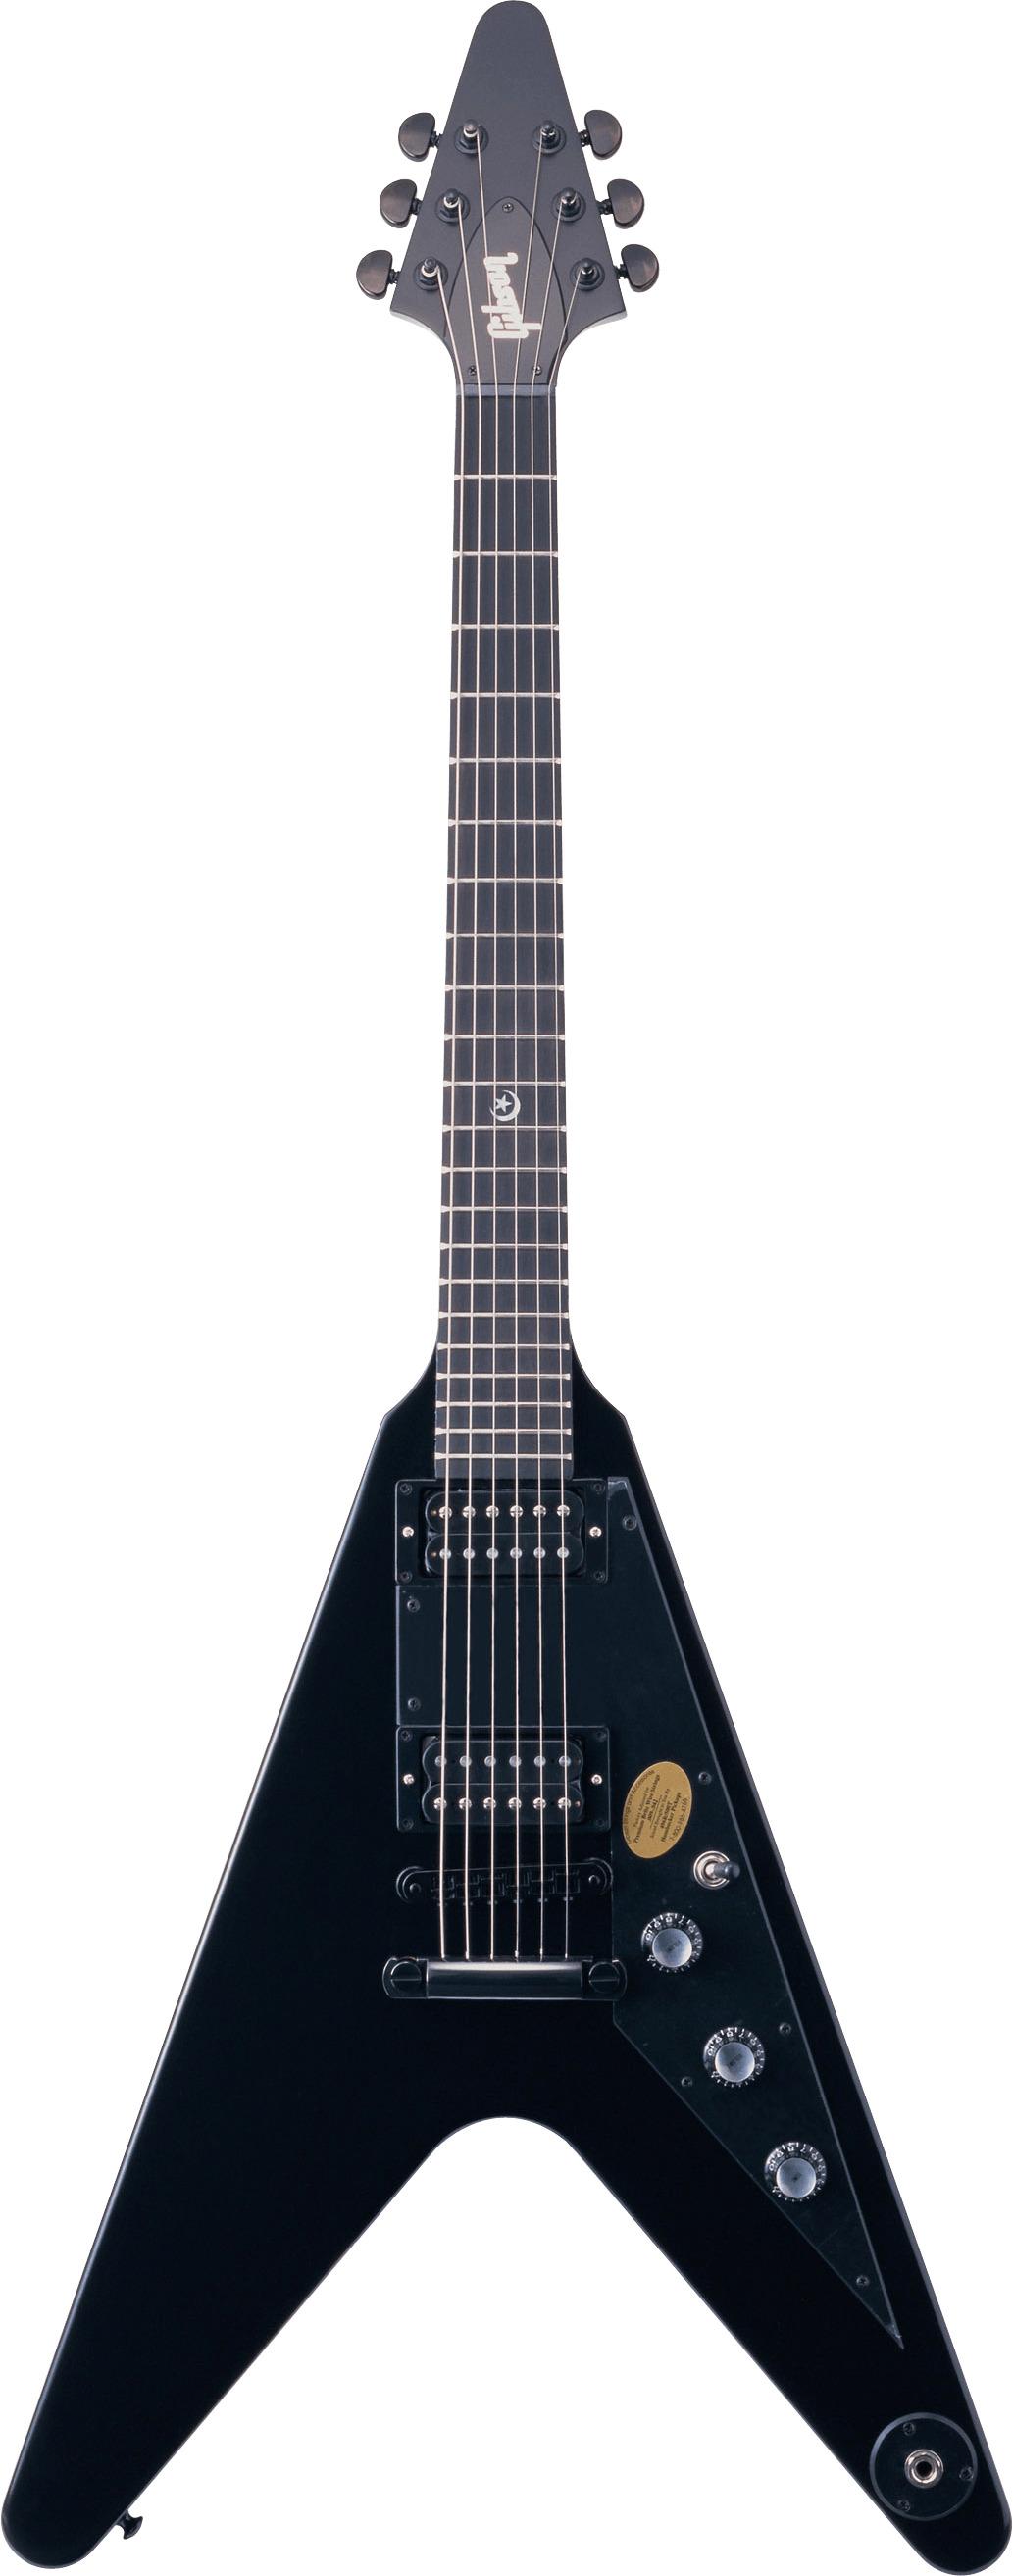 Gibson Metal Rock Guitar png transparent